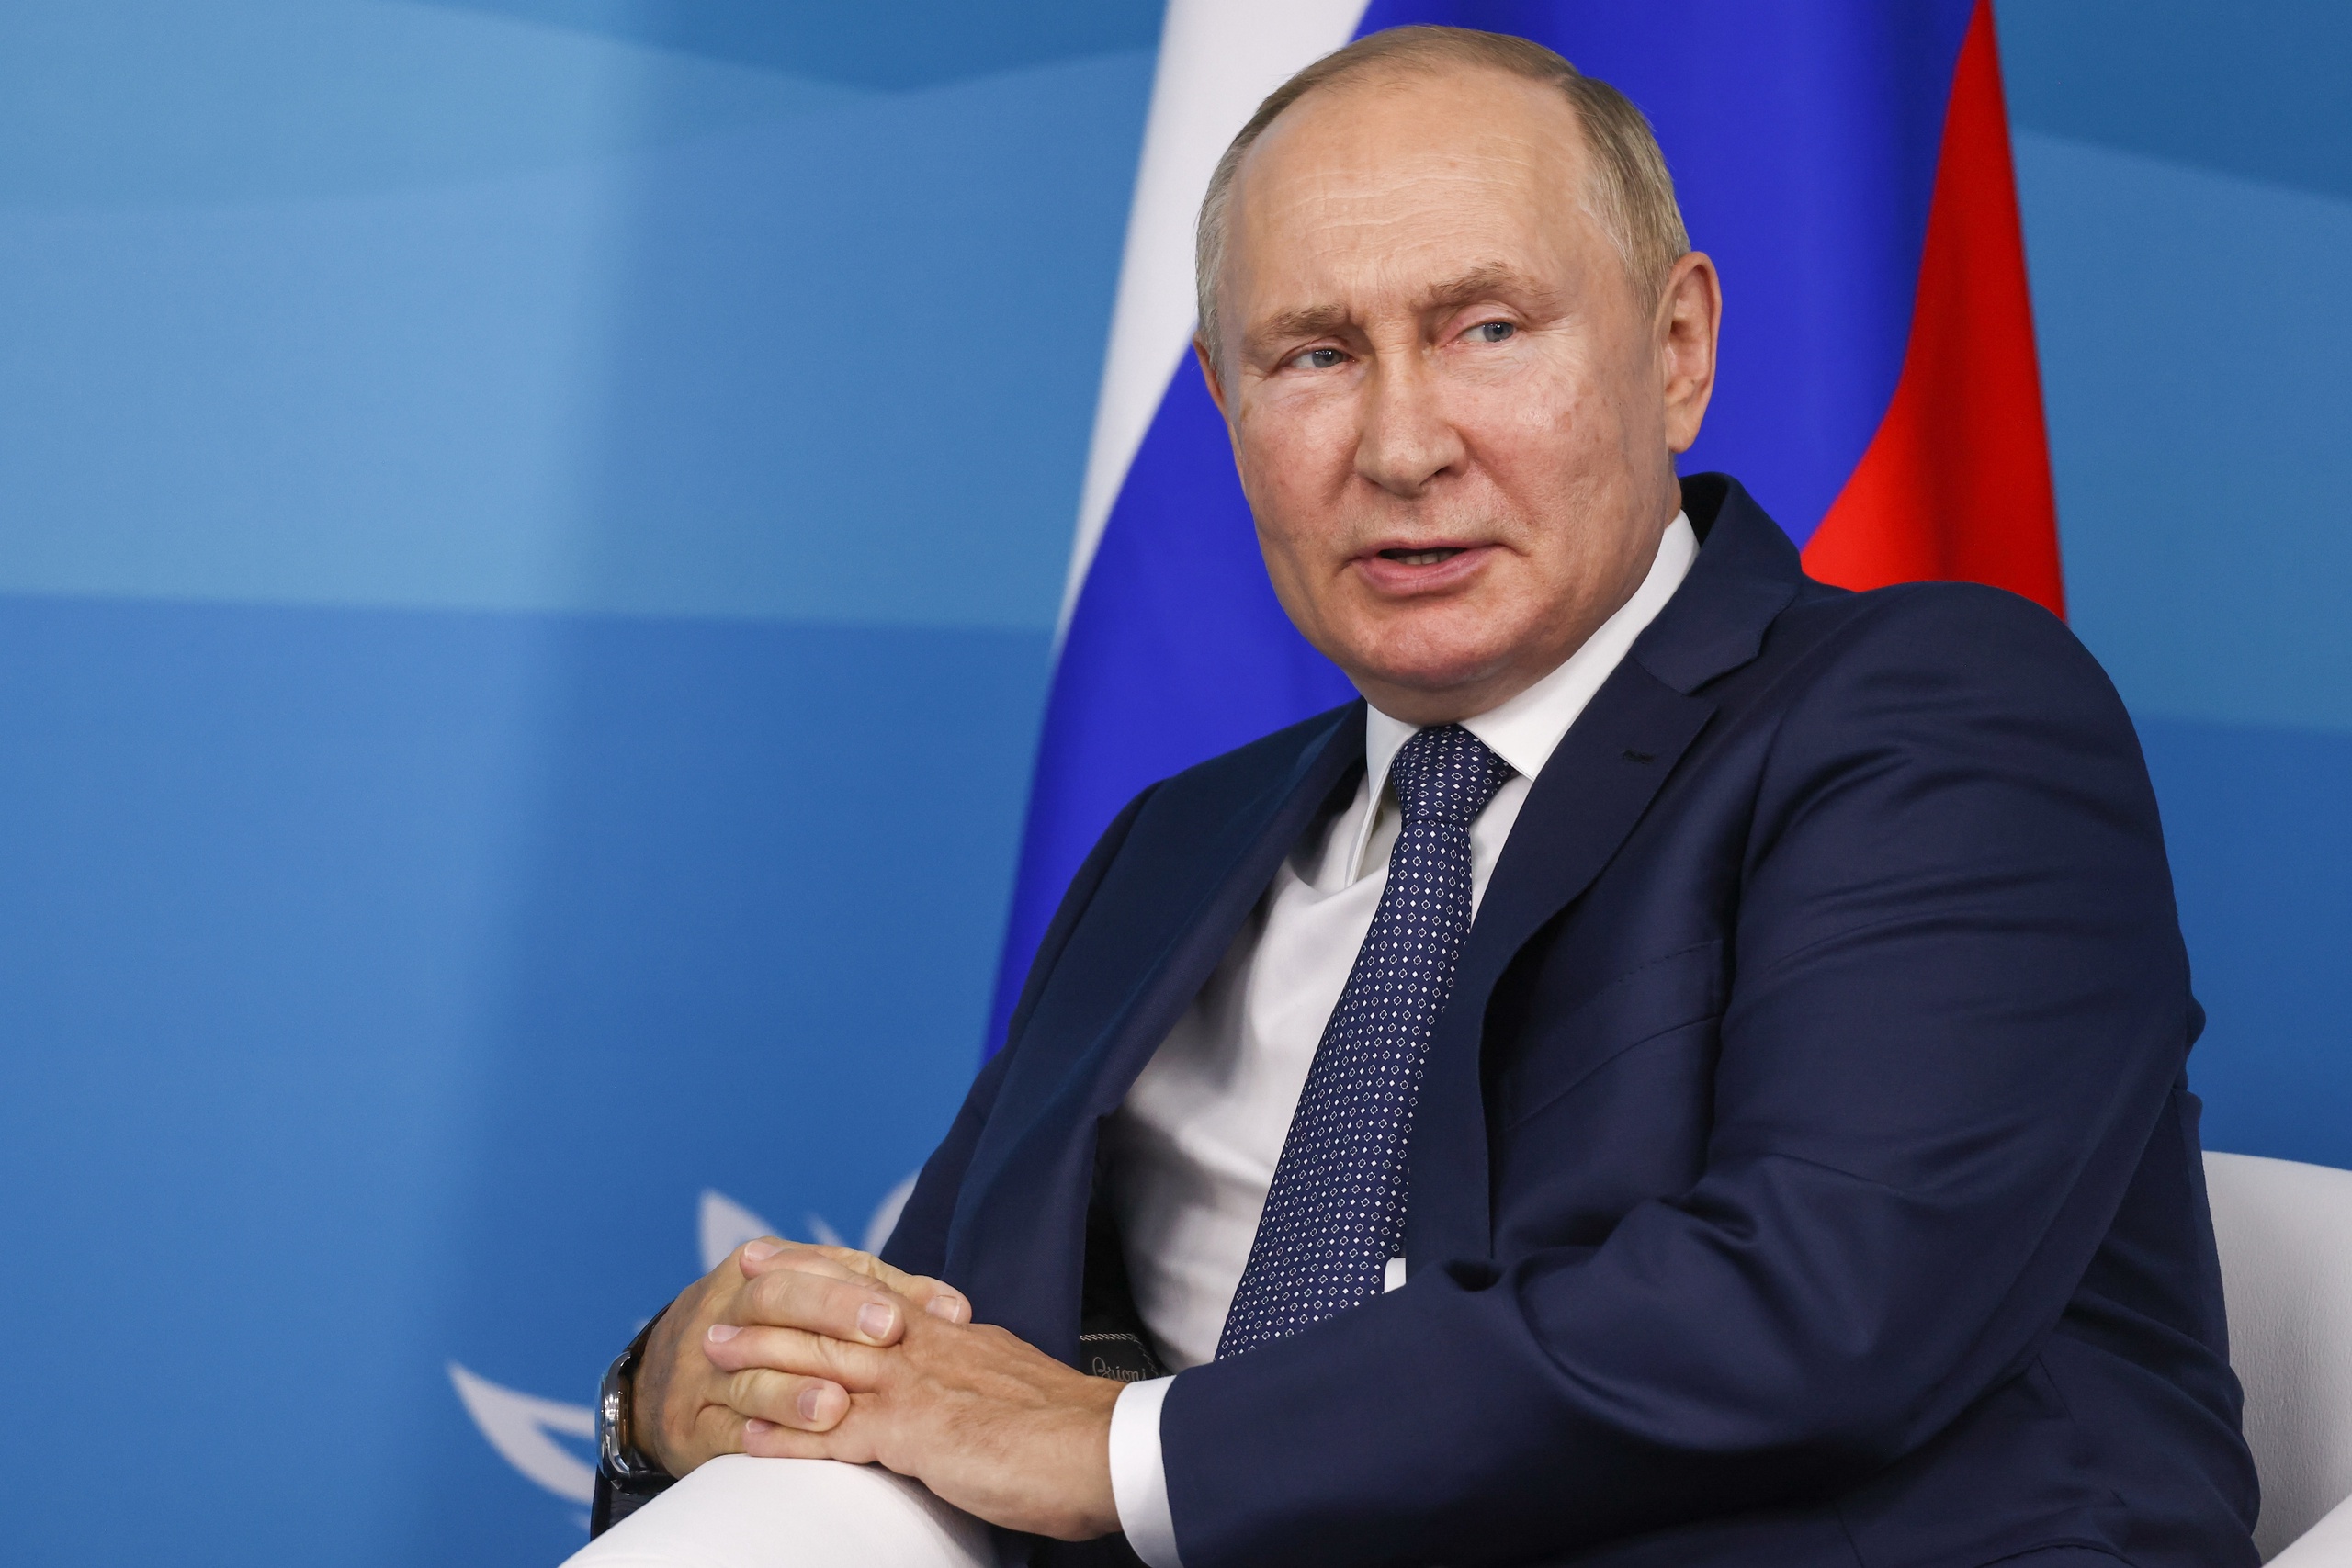 Rusland is volgens Poetin steeds meer aan het kijken naar economische mogelijkheden in het Midden-Oosten en Azië. 